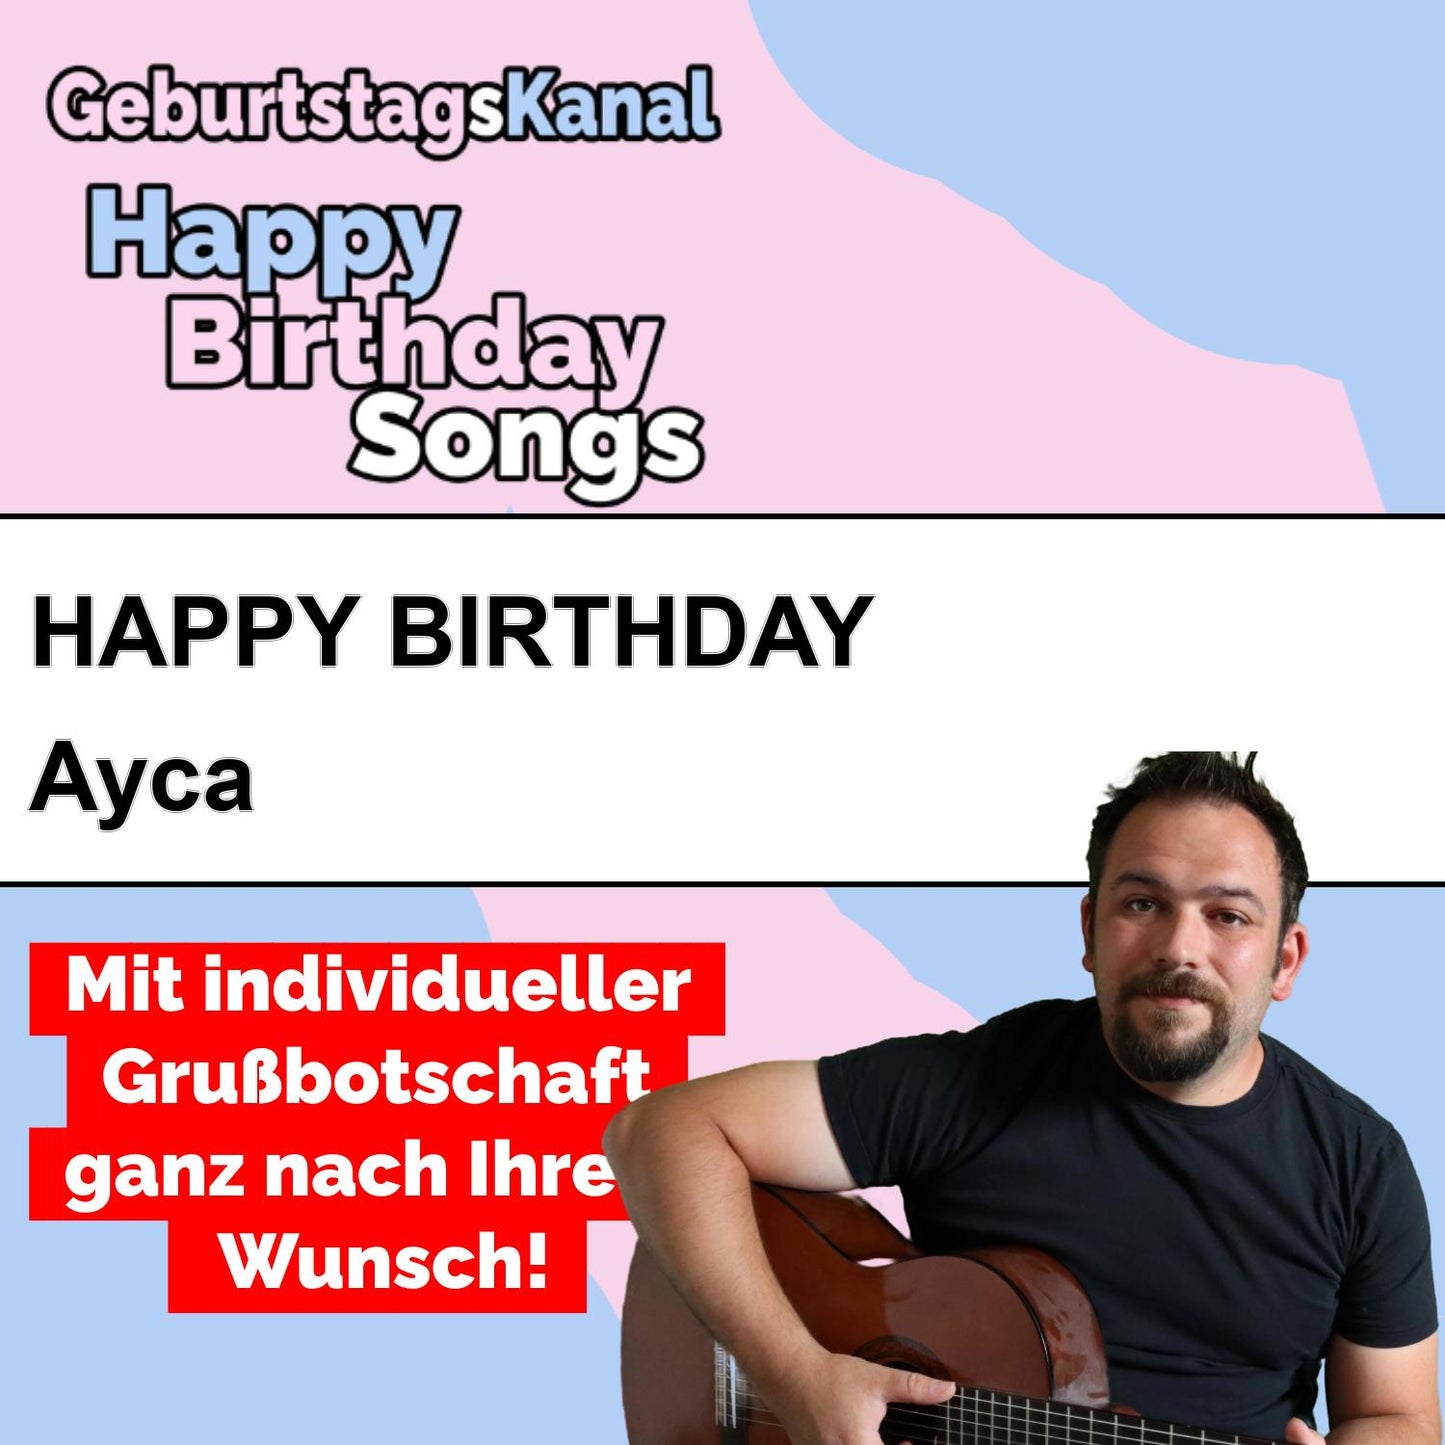 Produktbild Happy Birthday to you Ayca mit Wunschgrußbotschaft